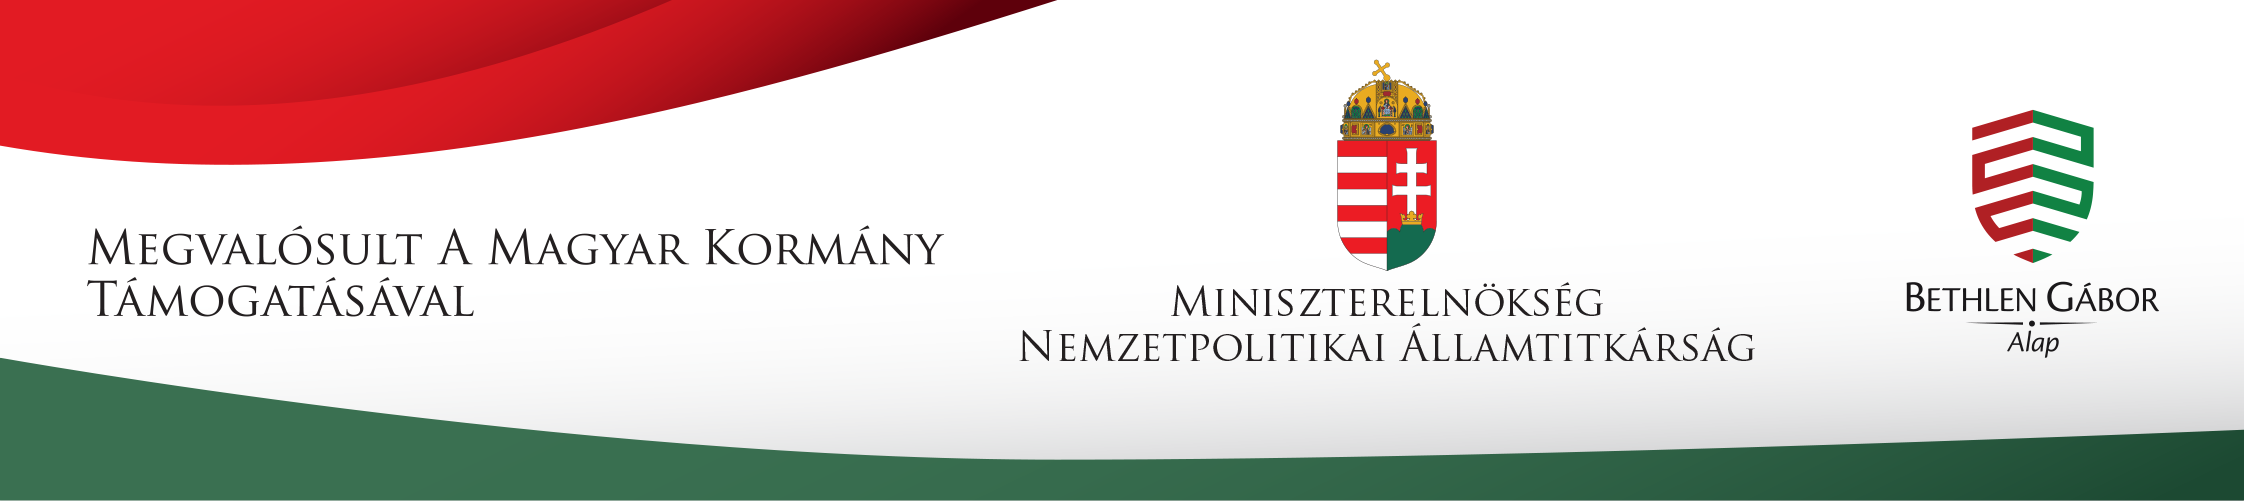 Megvalósult a magyar kormány támogatásával logó